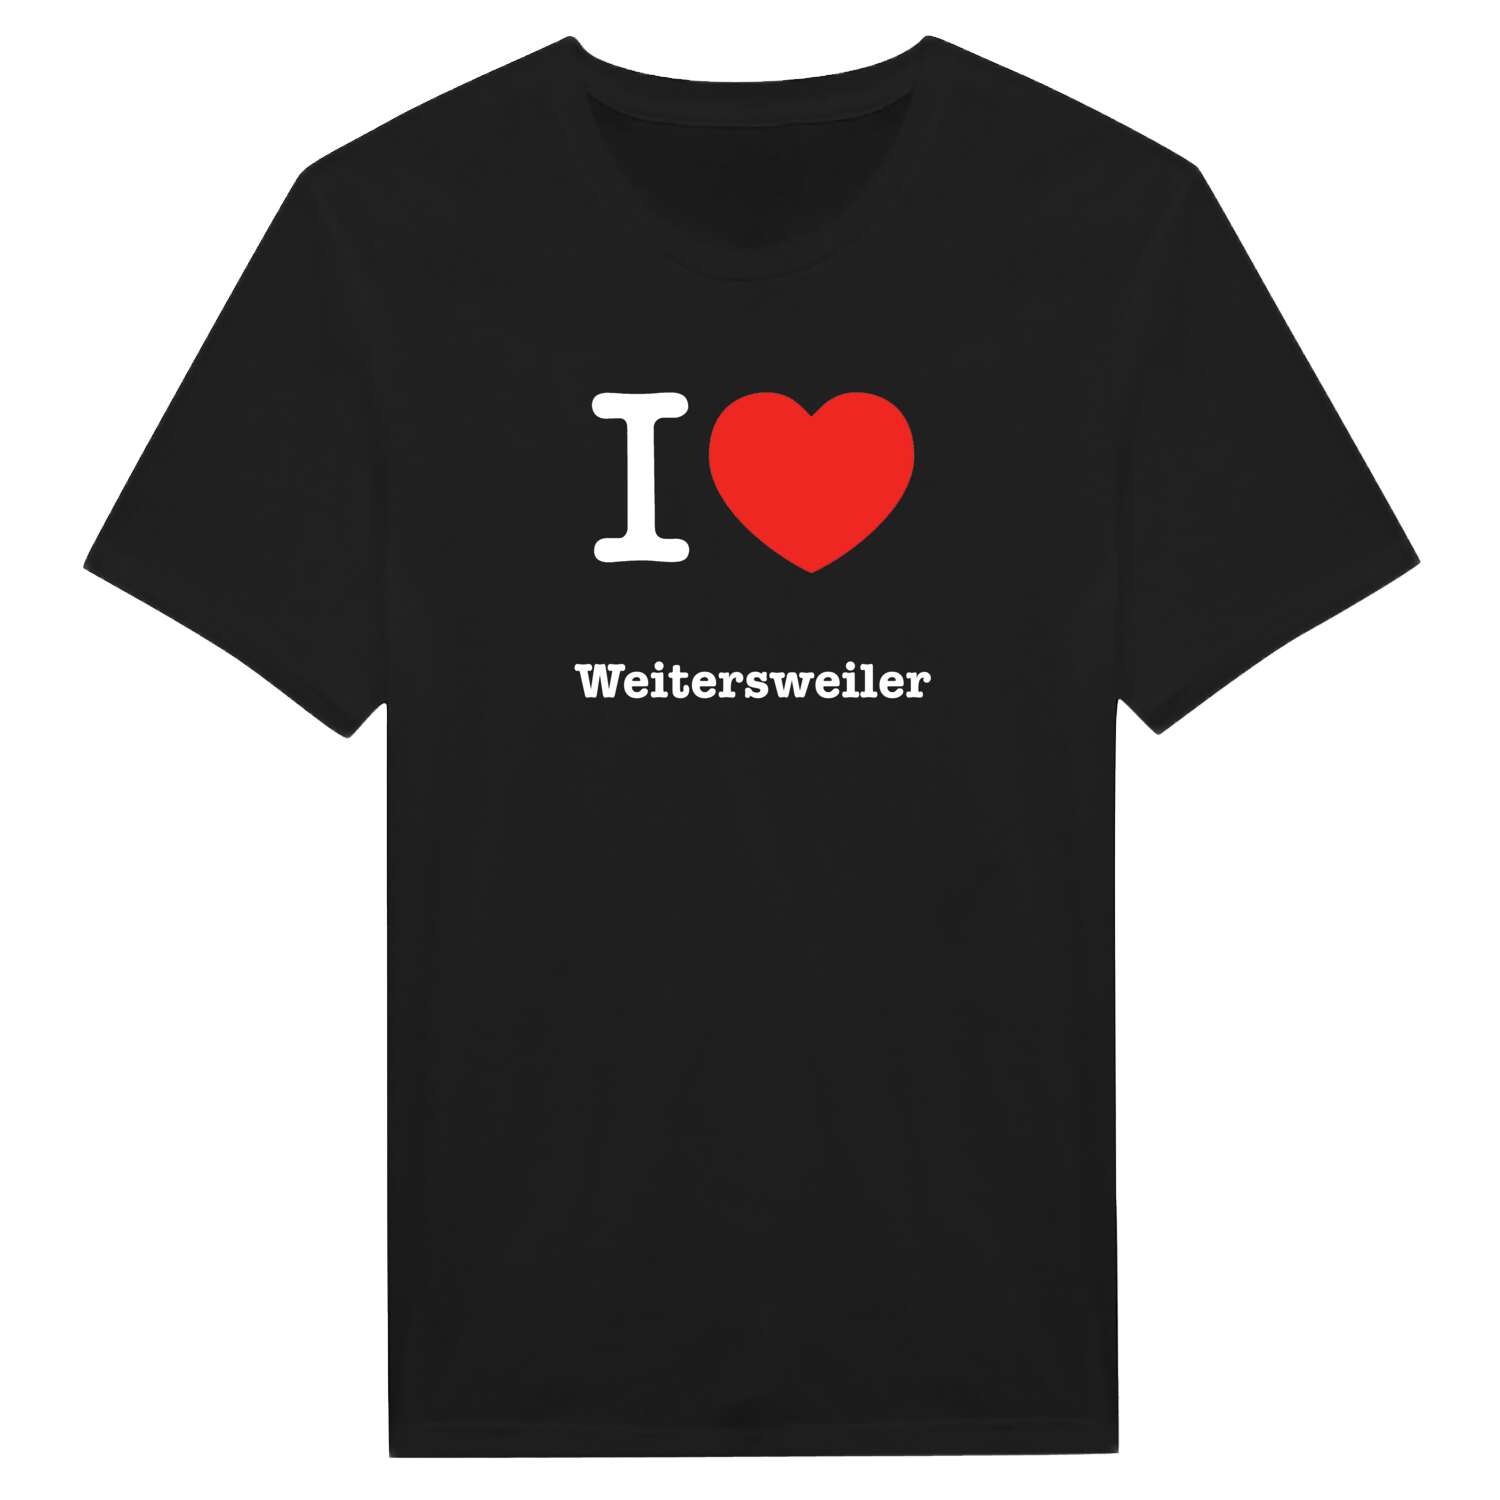 Weitersweiler T-Shirt »I love«